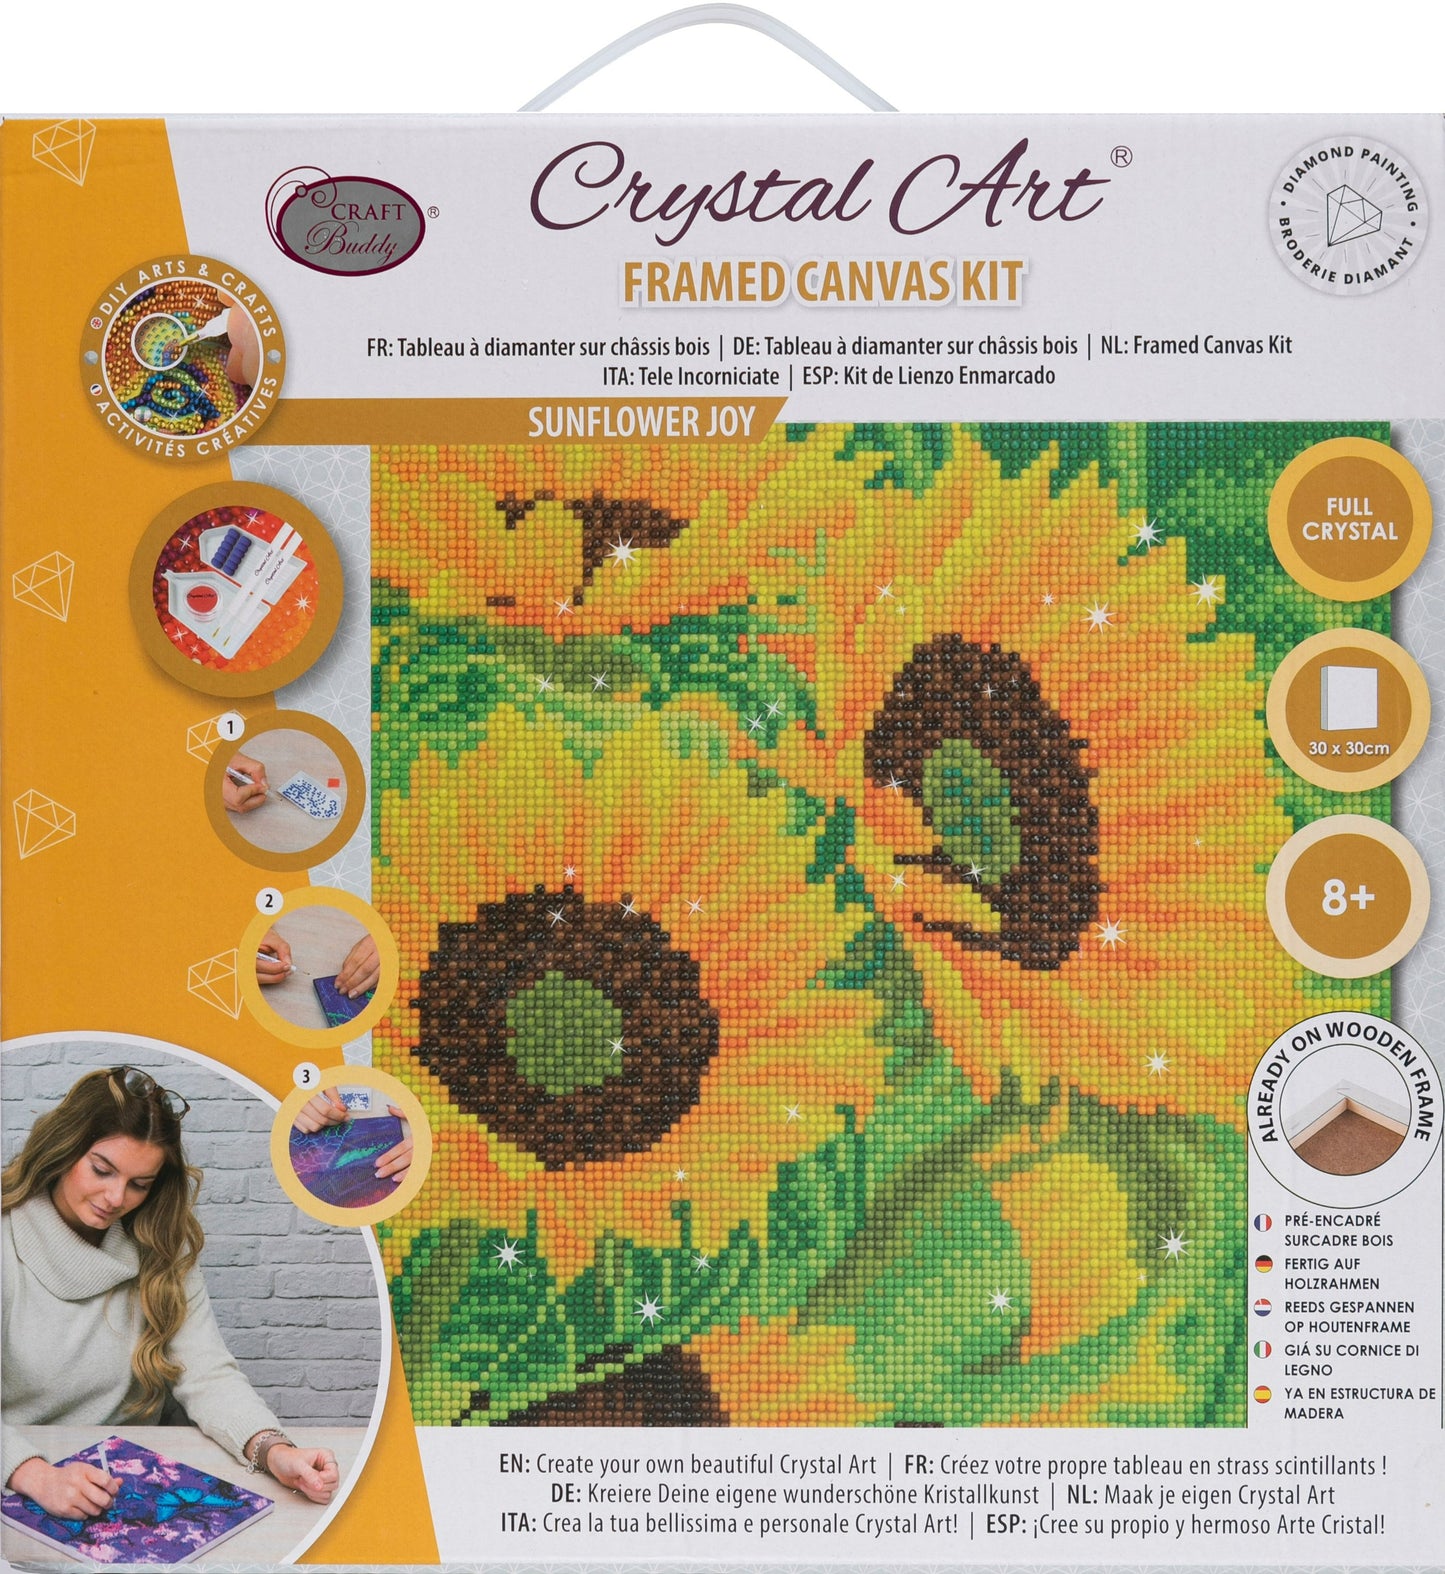 Sunflower joy crystal art kit front packaging